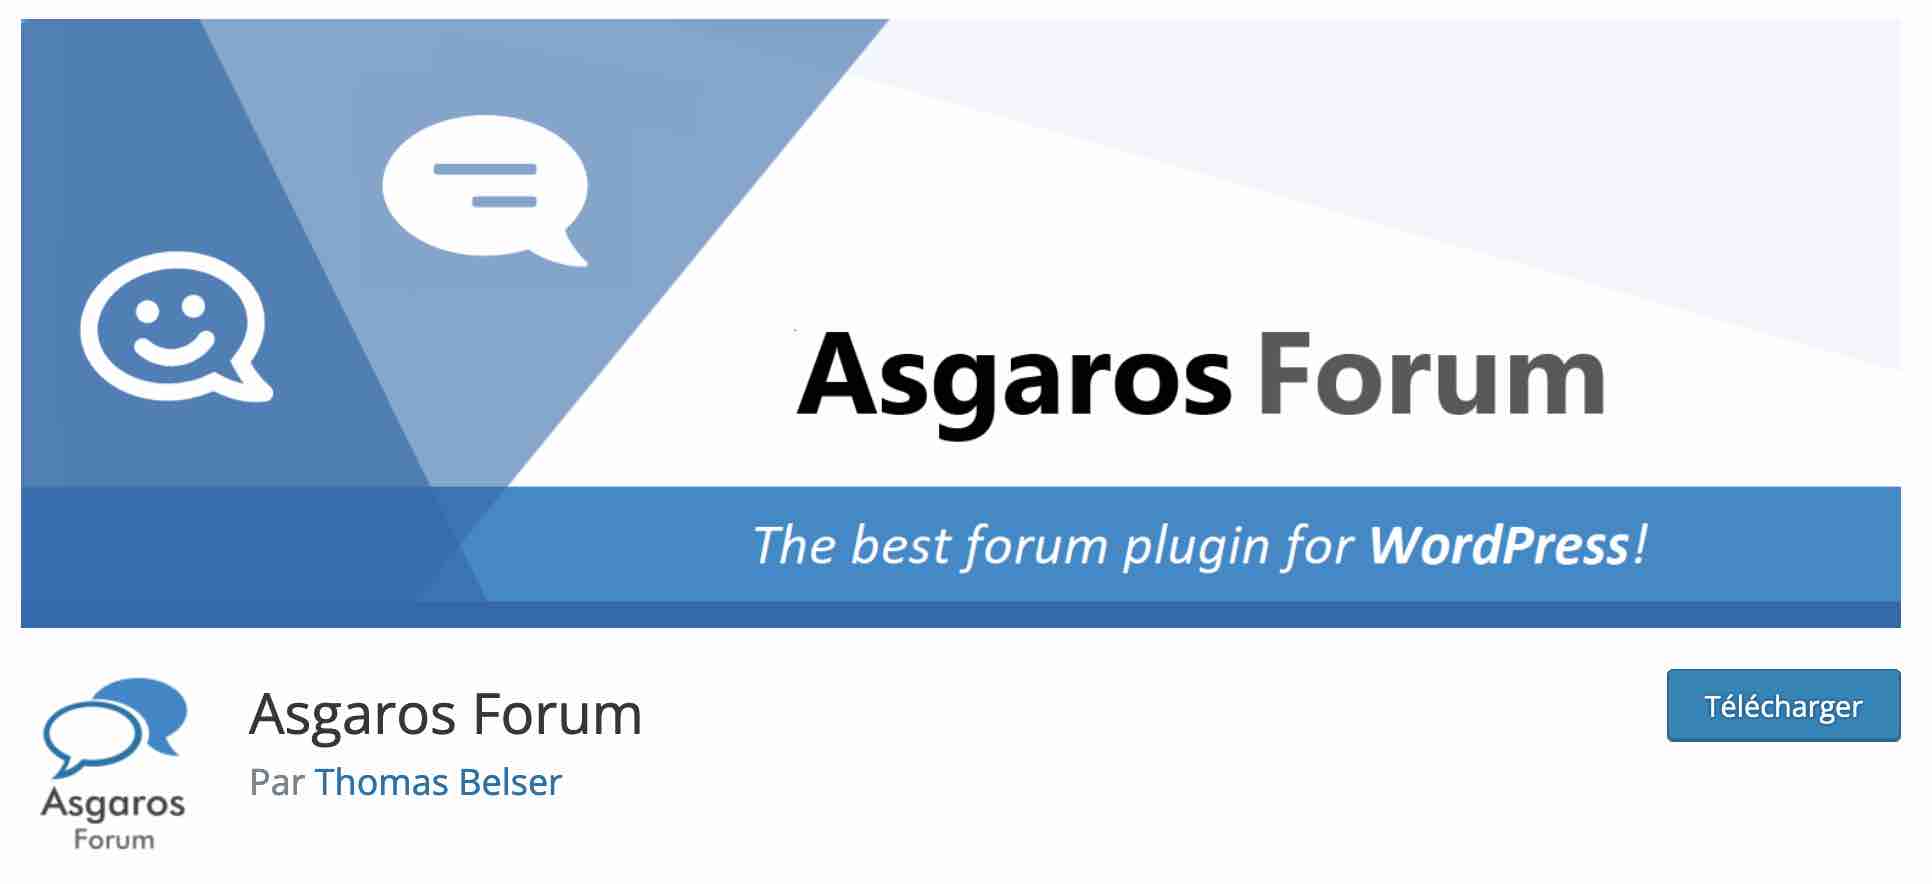 Asgaros est un plugin pour créer un forum sur WordPress.